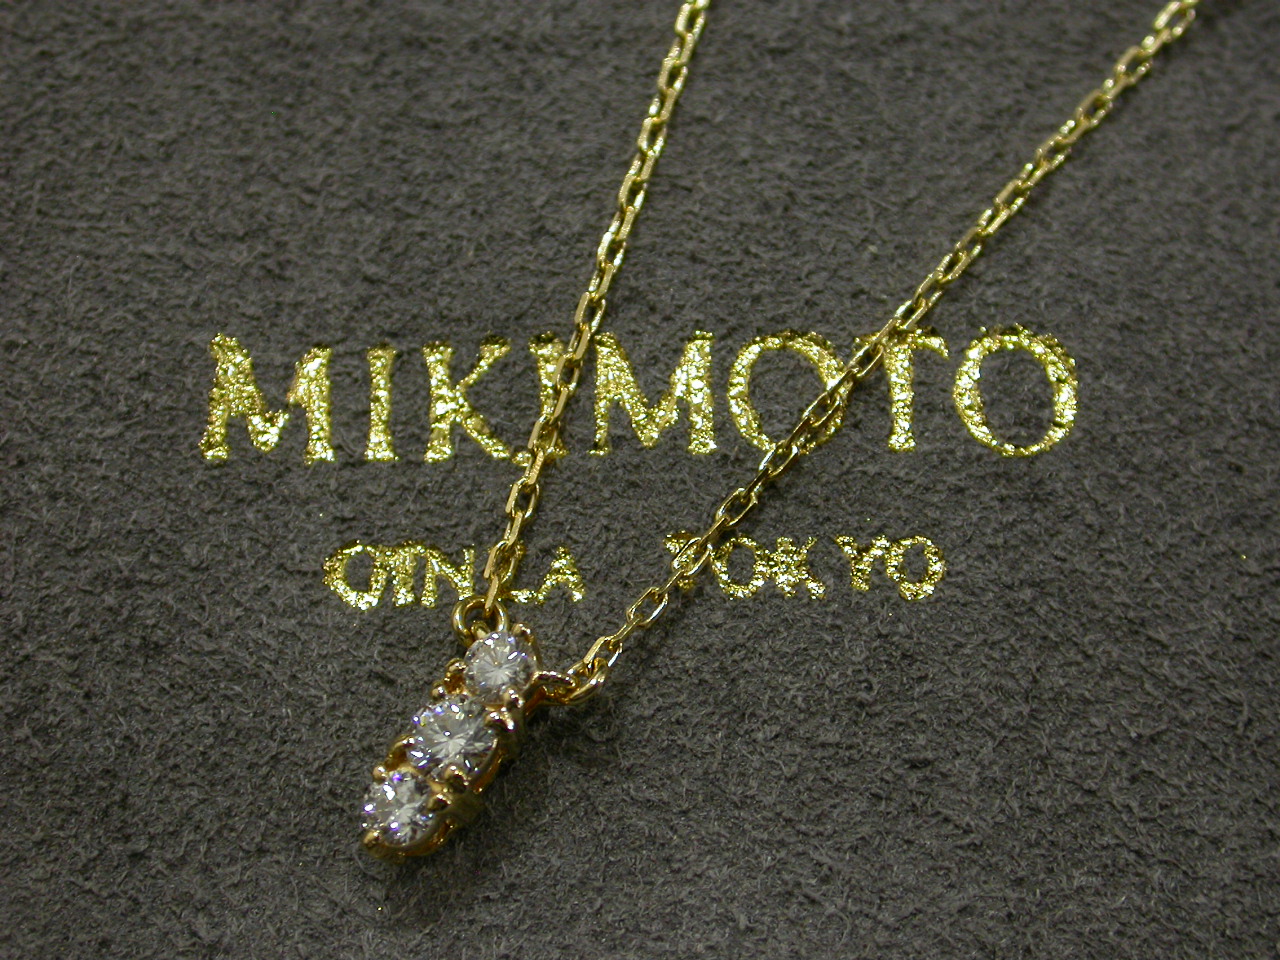 【宅配買取】MIKIMOTO ミキモト K18YG ダイヤモンド0.30ct ネックレスの買取 大阪府 守口市から | 貴金属・ダイヤモンド